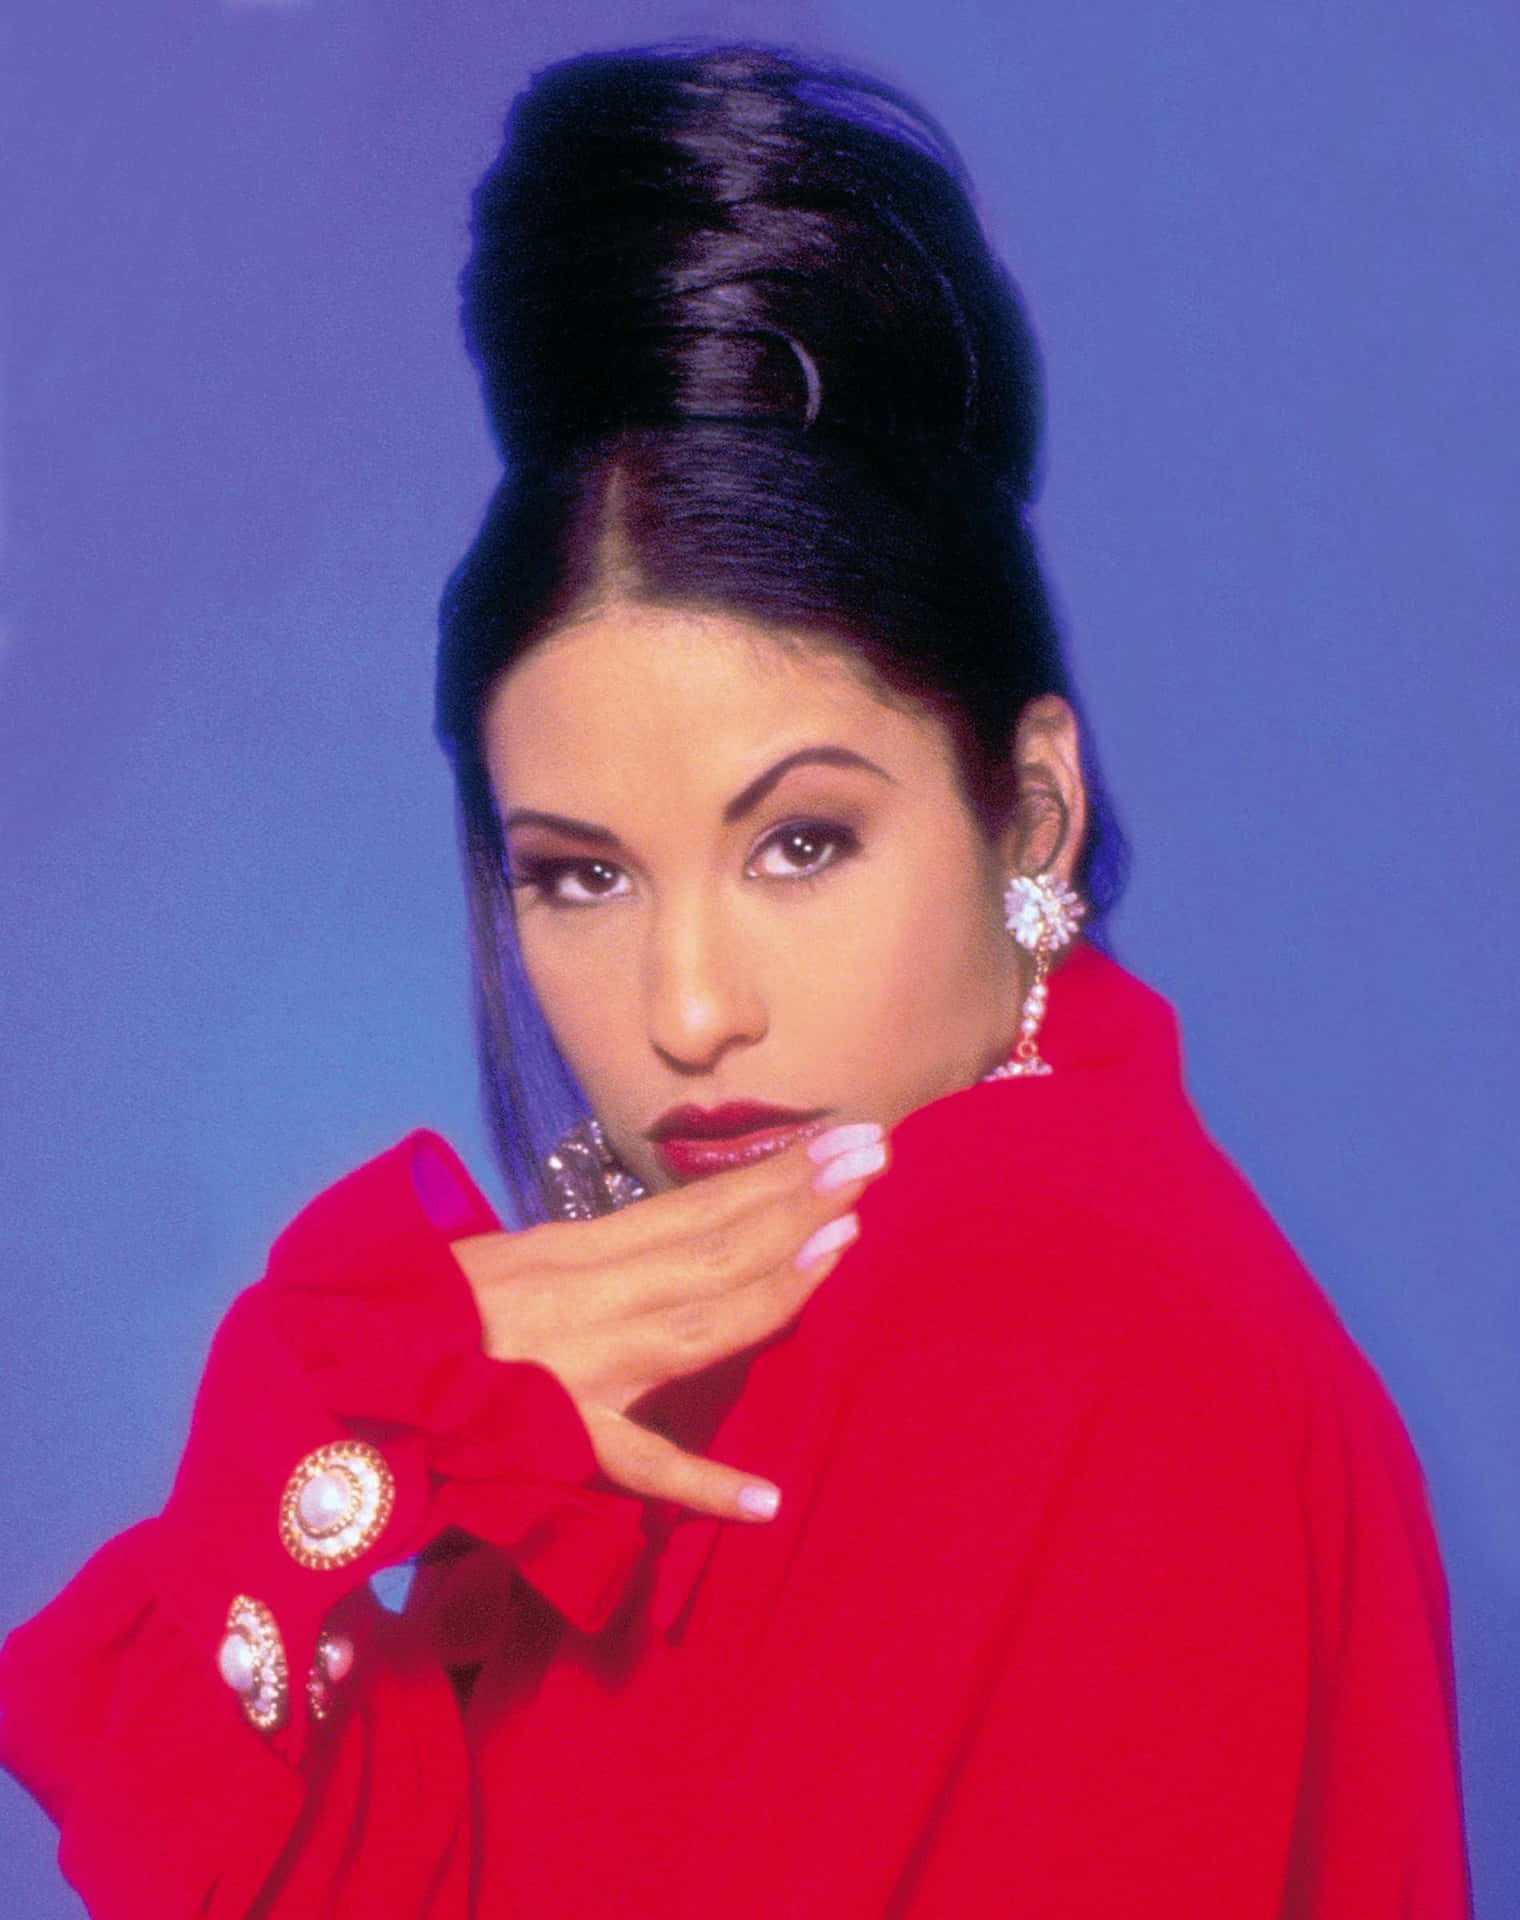 Visadin Kärlek För Tejanodrottningen Selena Quintanilla Genom Att Ha Hennes Ikoniska Bild Som Bakgrundsbild På Din Iphone. Wallpaper